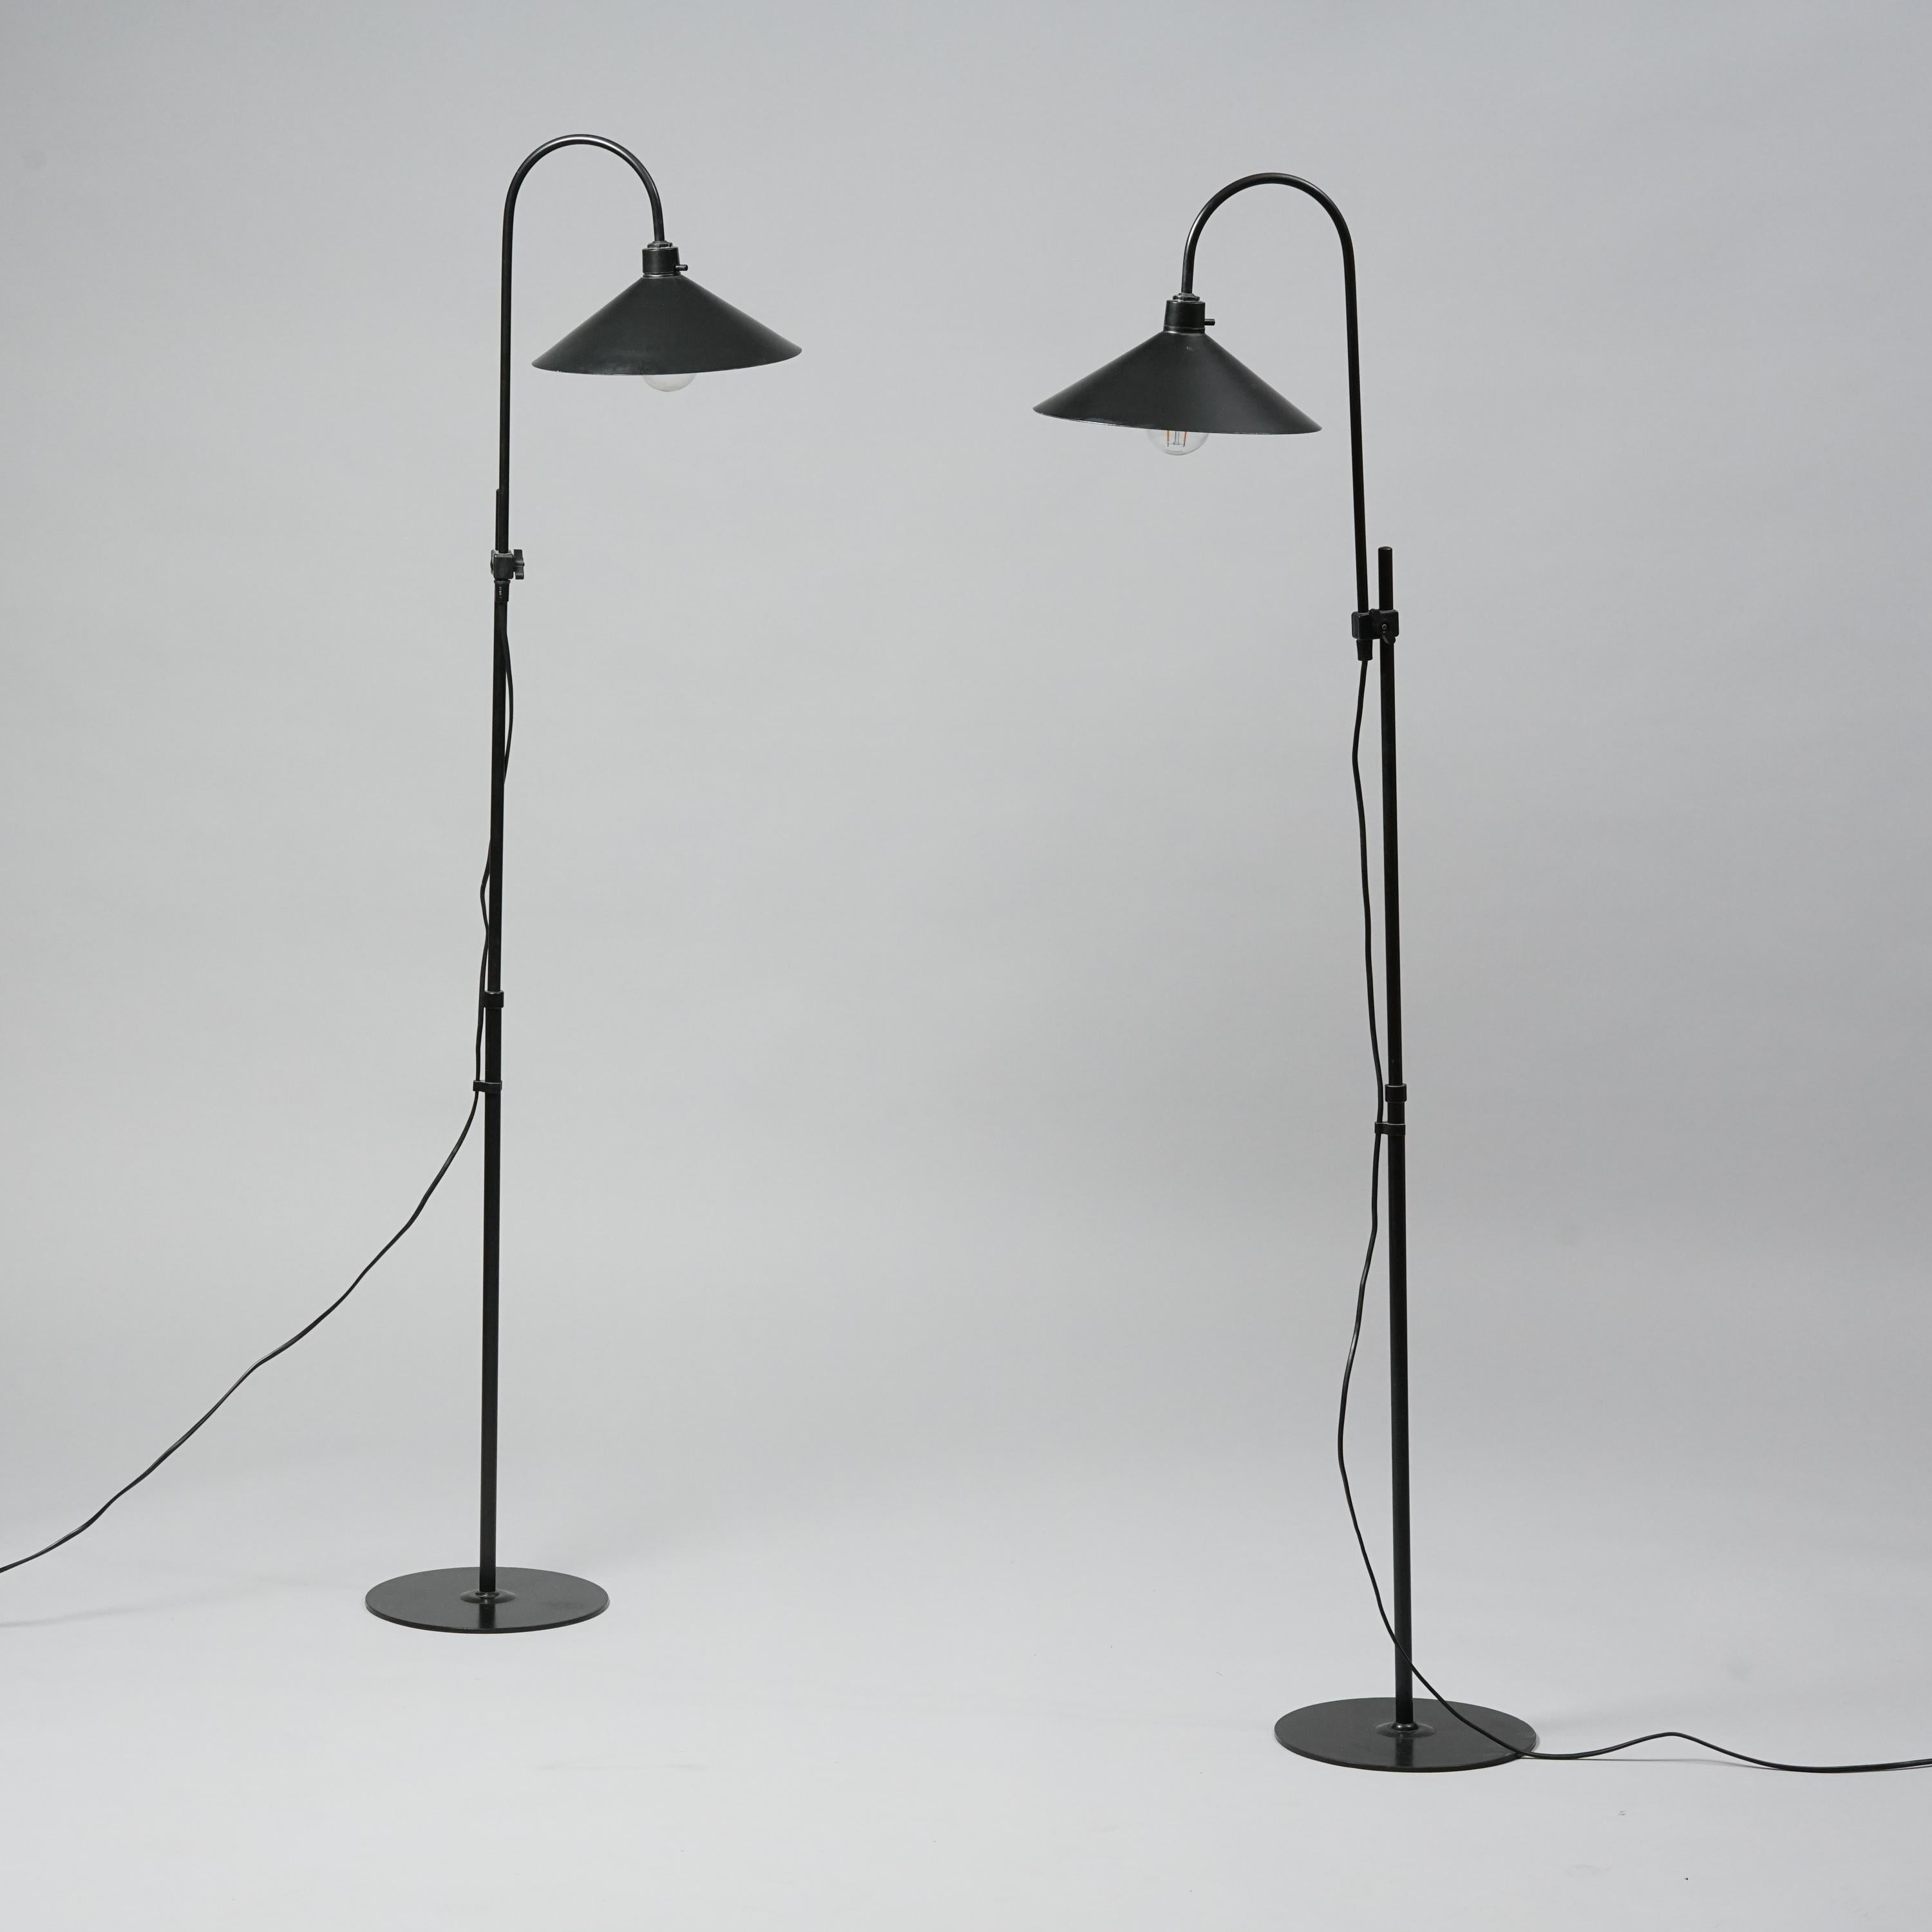 Ensemble de deux lampadaires danois par Frandsen. Métal. Bon état vintage, usure mineure correspondant à l'âge et à l'utilisation. Les lampadaires sont vendus comme un ensemble. La hauteur des lampes est réglable. La hauteur maximale est de 150 cm.